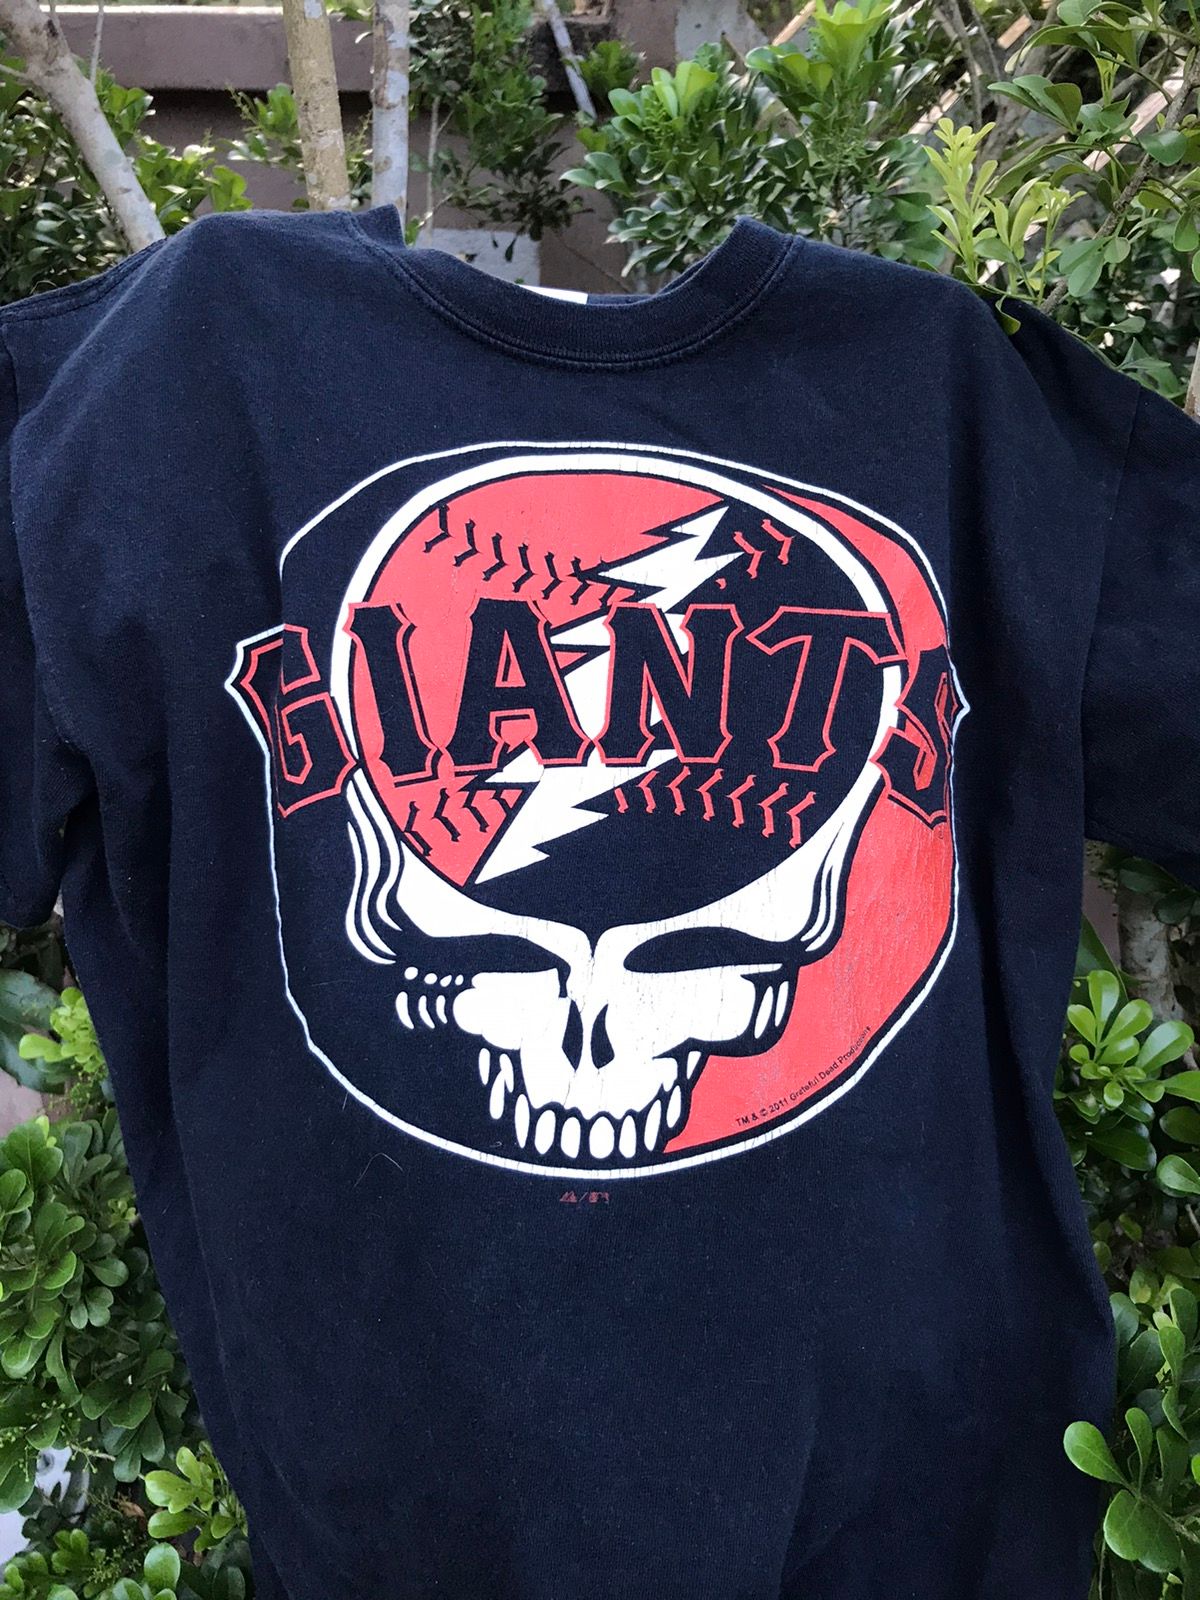 New t shirt black tops for men New Grateful Dead SF Giants Men's T